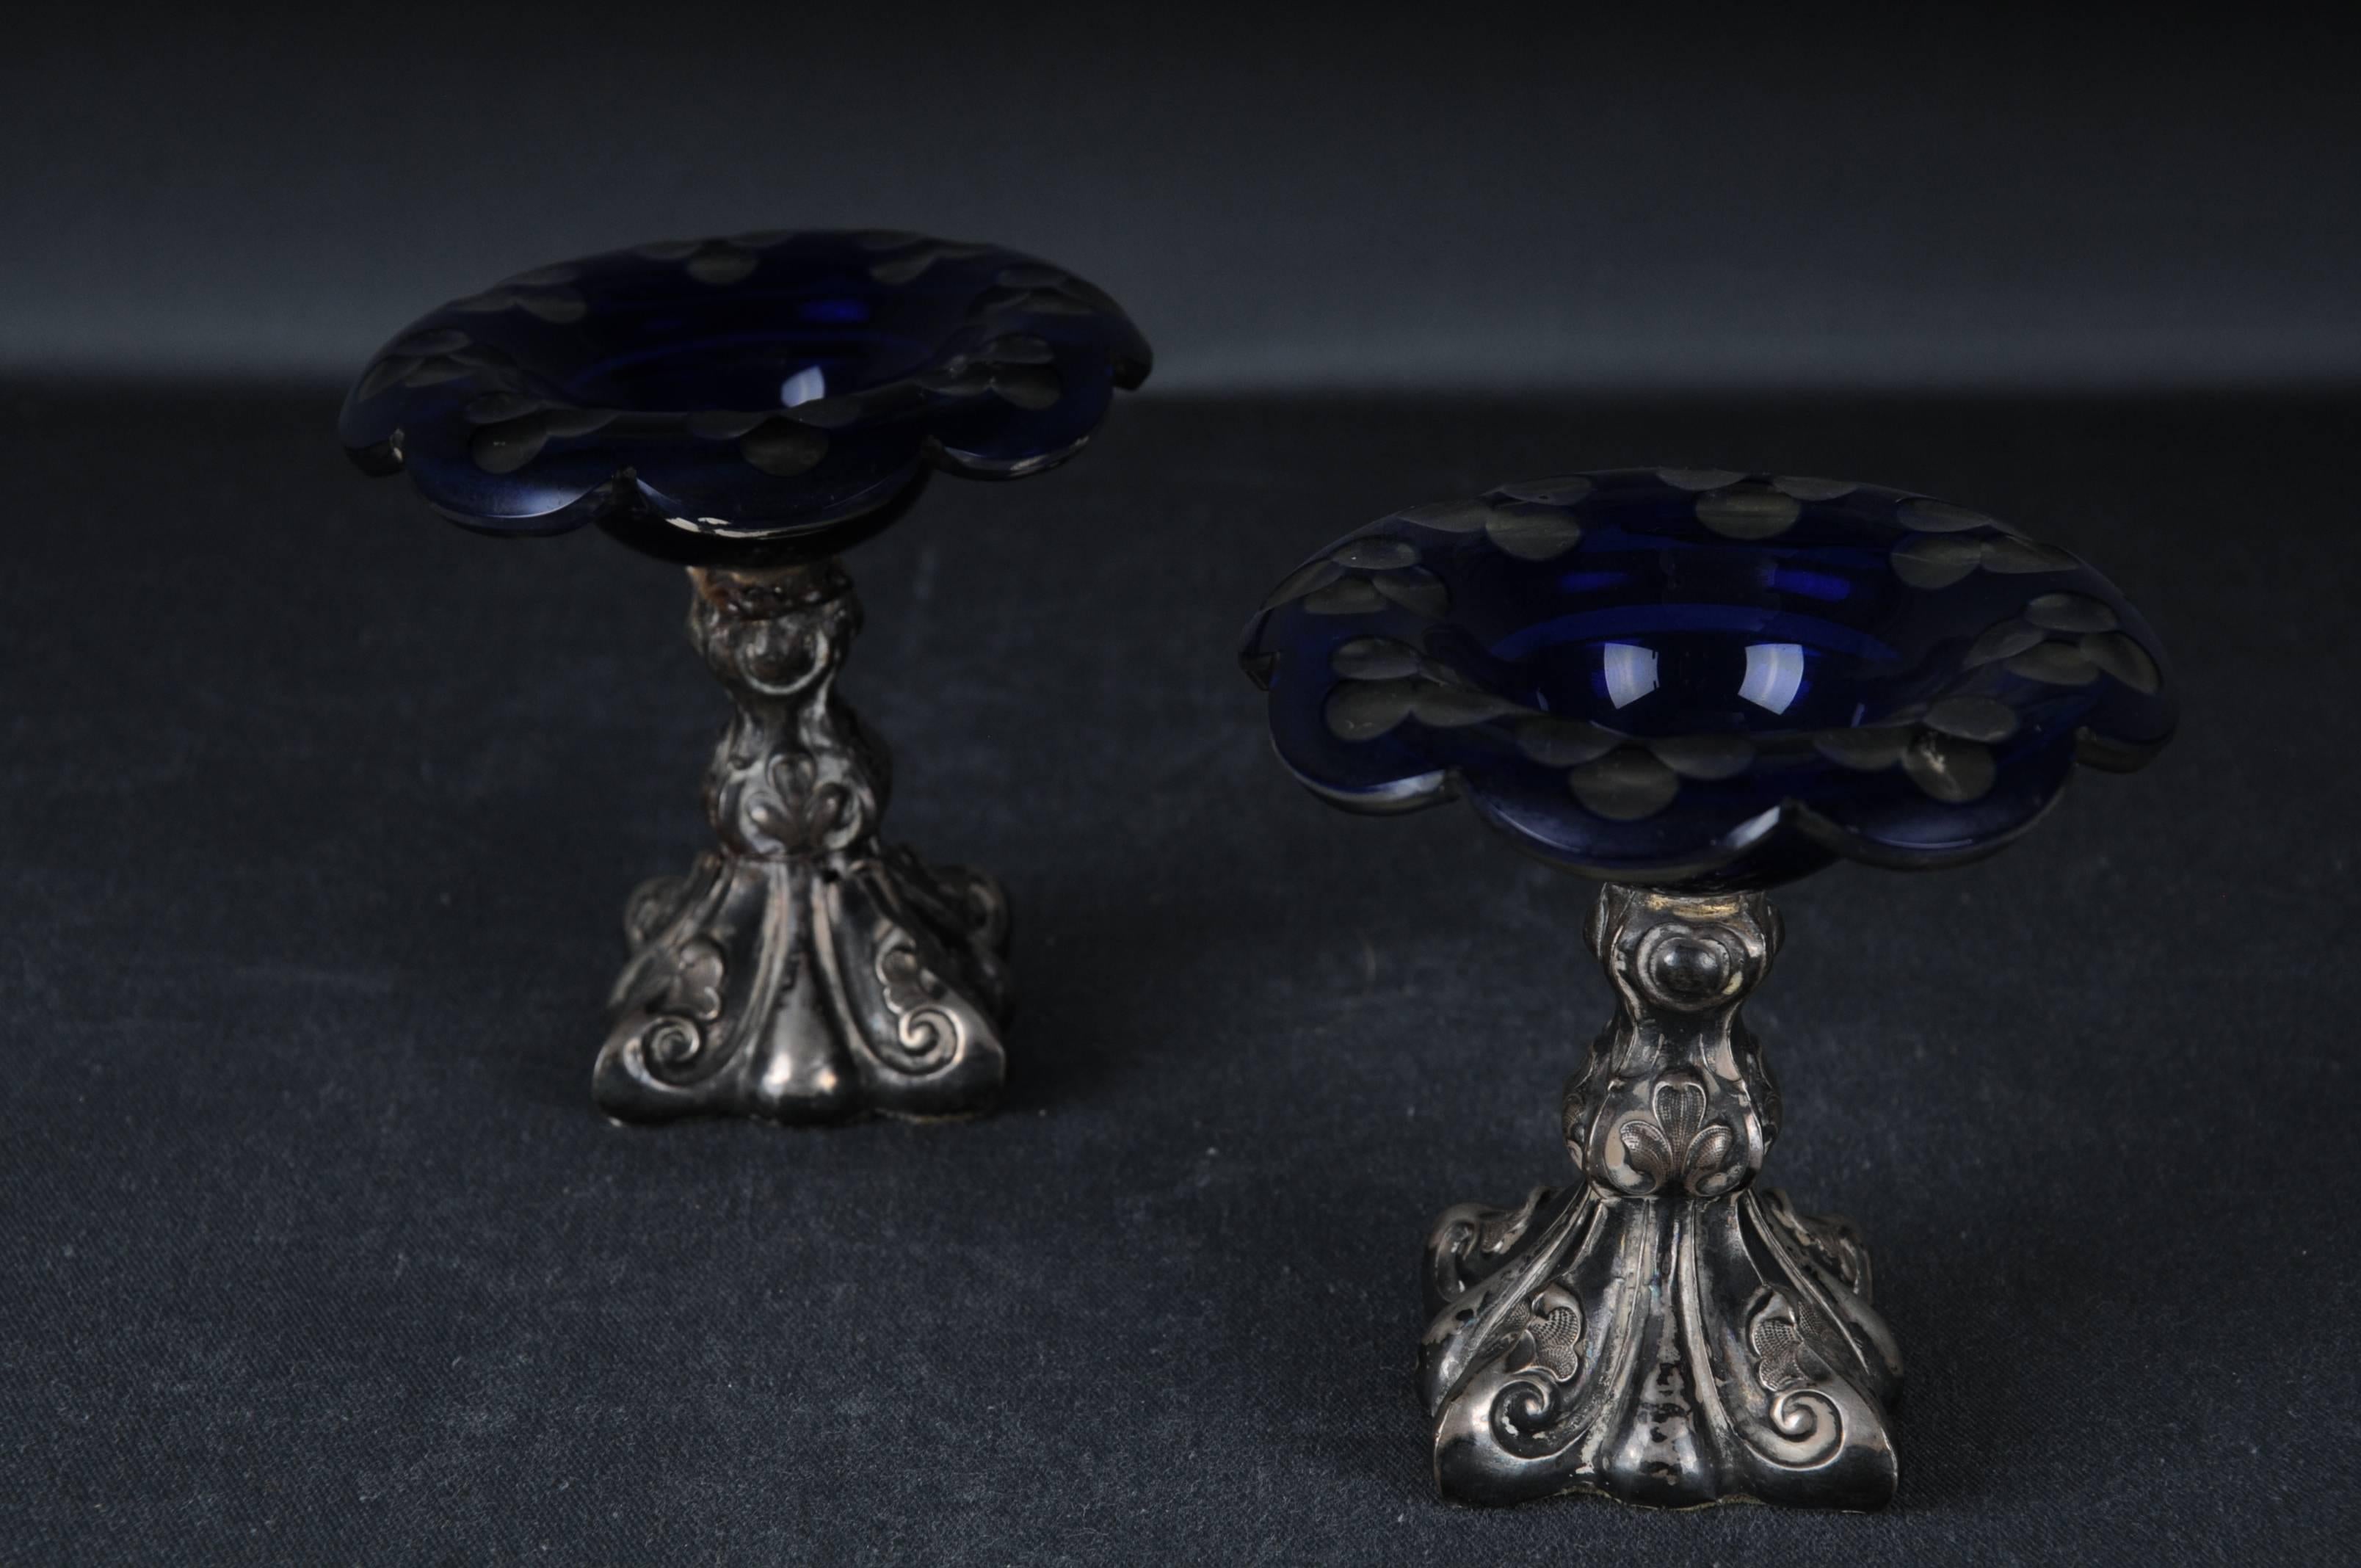 2 Antike Kaviar-Fußschalen aus Silber 
Biedermeier Deutschland 

Schalen mit blauem Glas

Die Schalen sind gewichtet
Gewicht: 292 Gramm

Der Zustand ist auf den Bildern zu sehen.